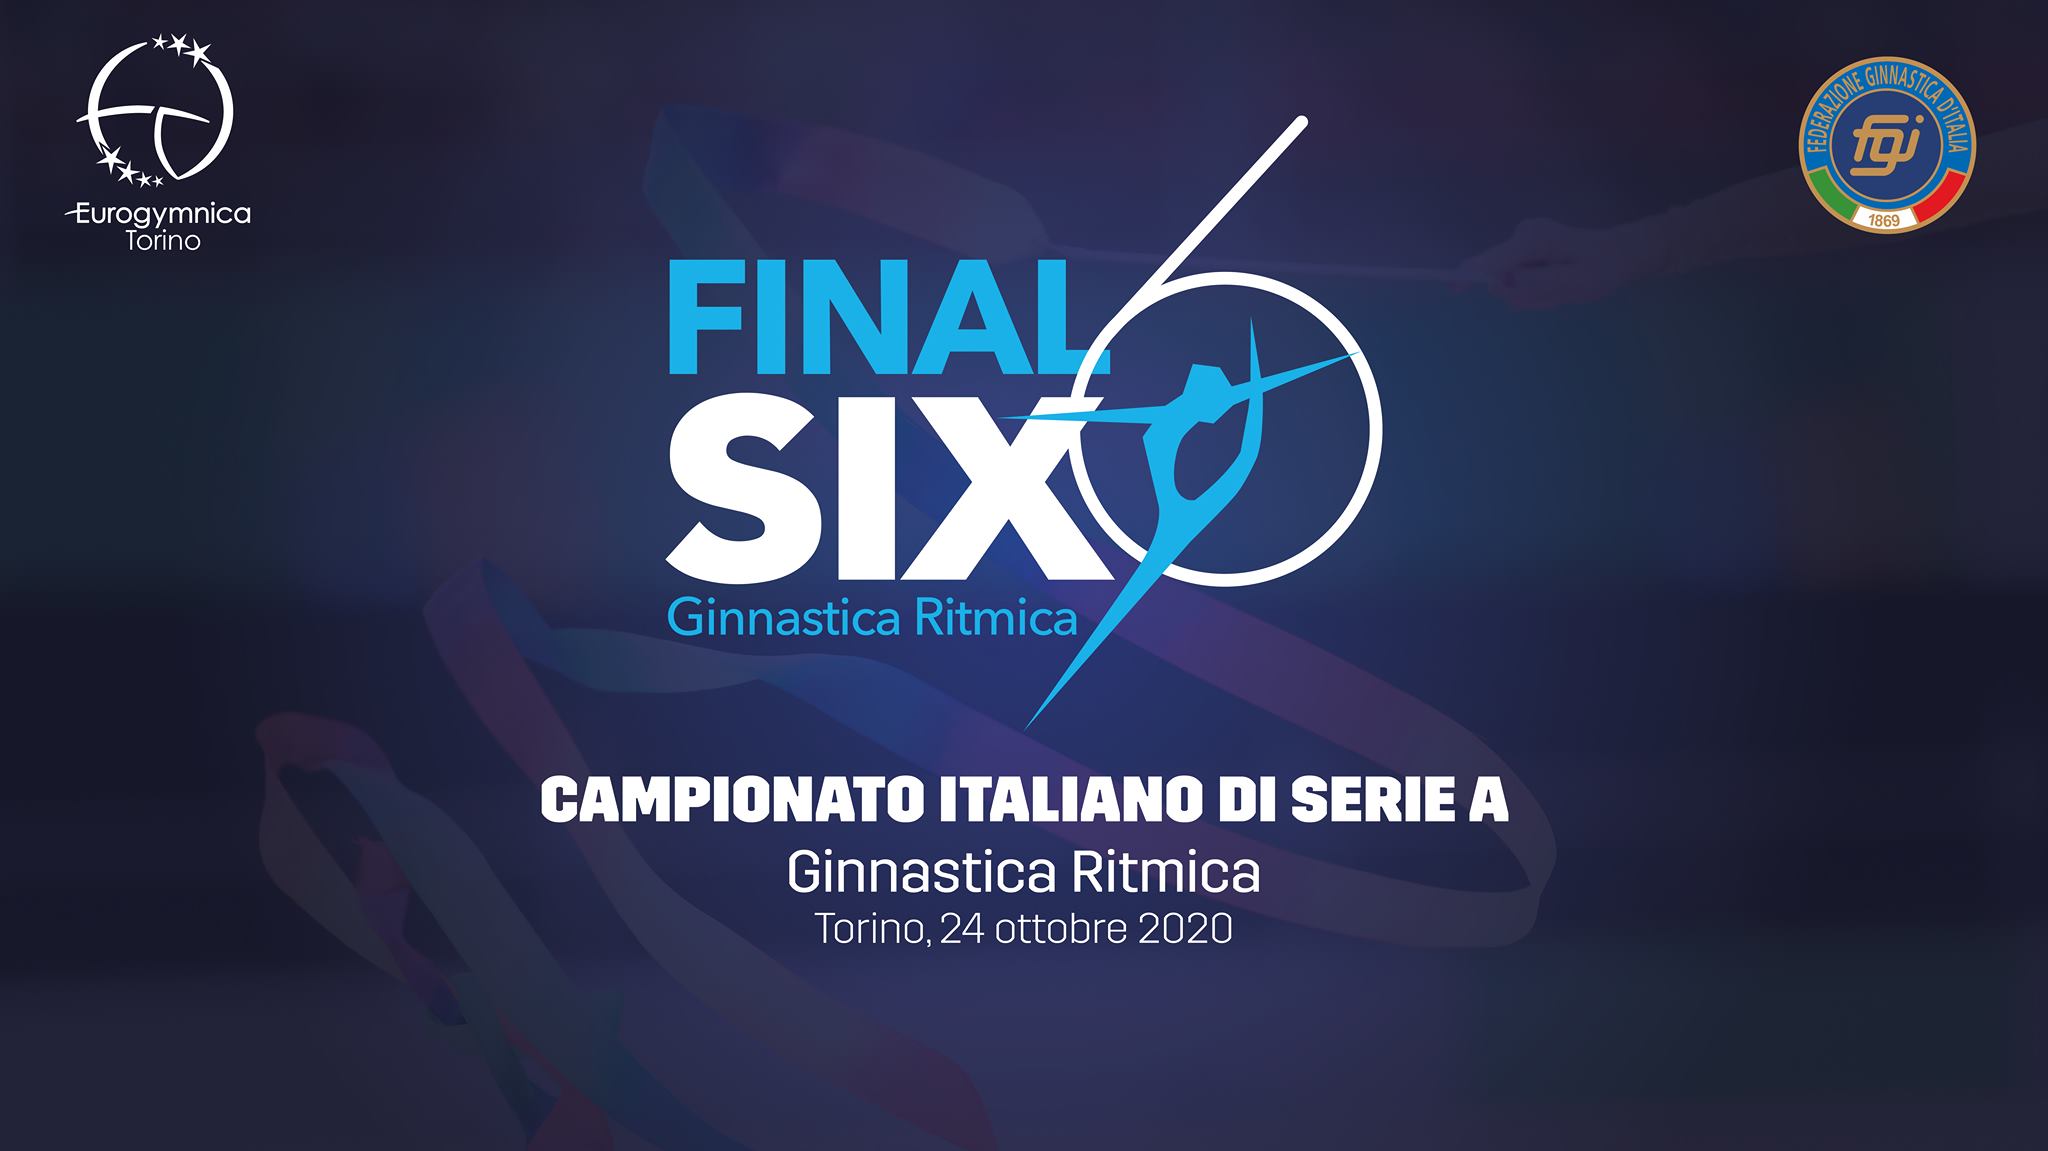 Final Six Serie A Torino 2020